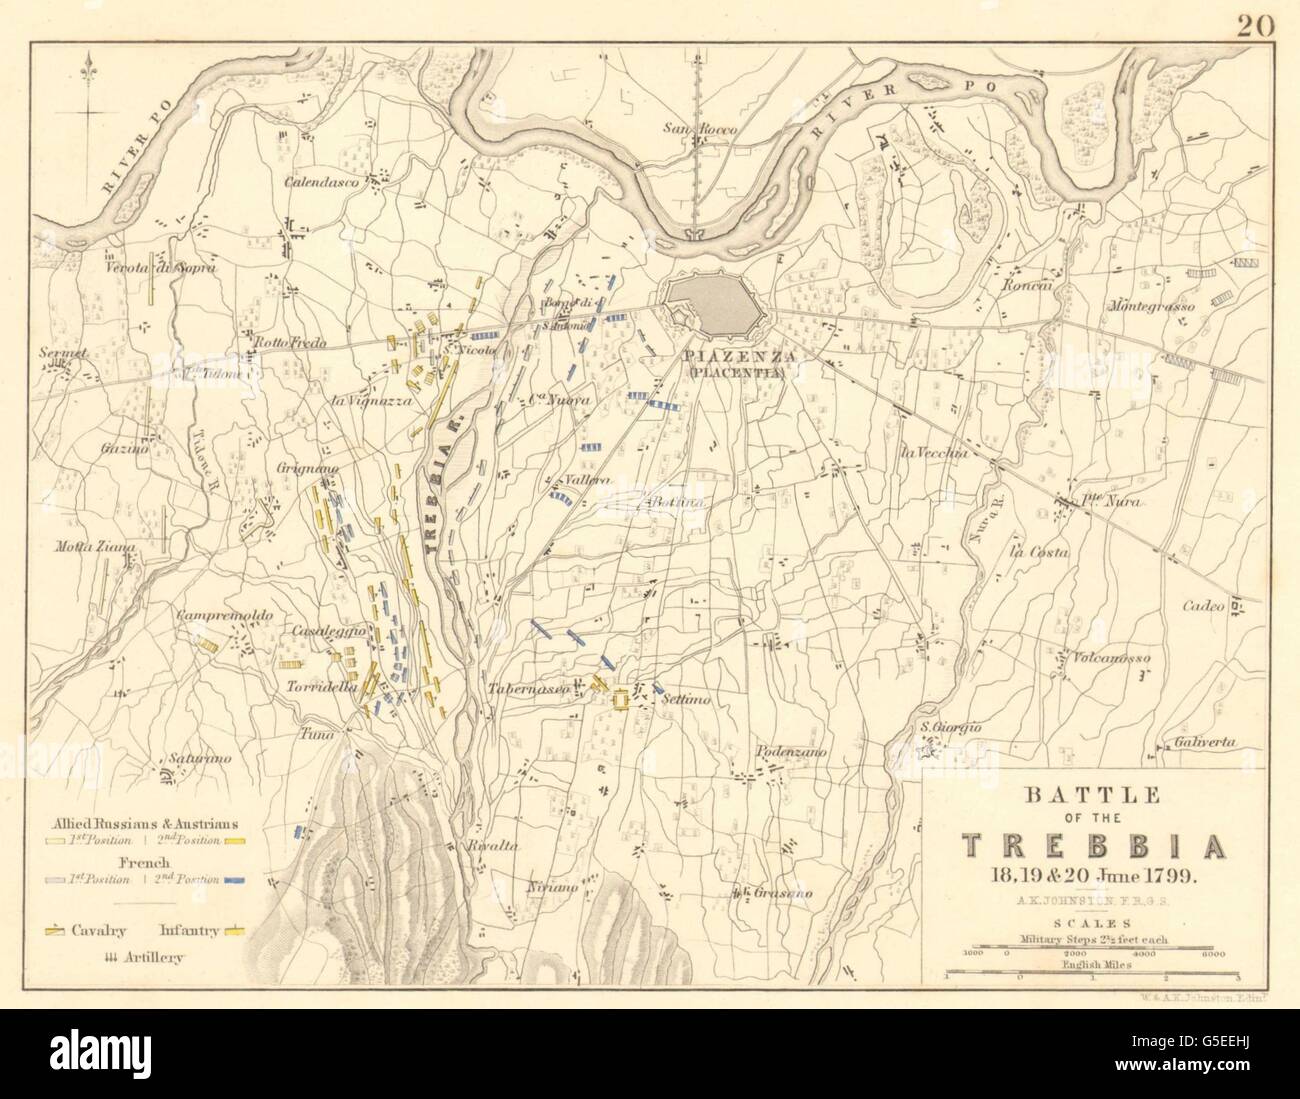 Schlacht an der TREBBIA: 18., 19. und 20. Juni 1799. Italien, 1848 Antike Landkarte Stockfoto